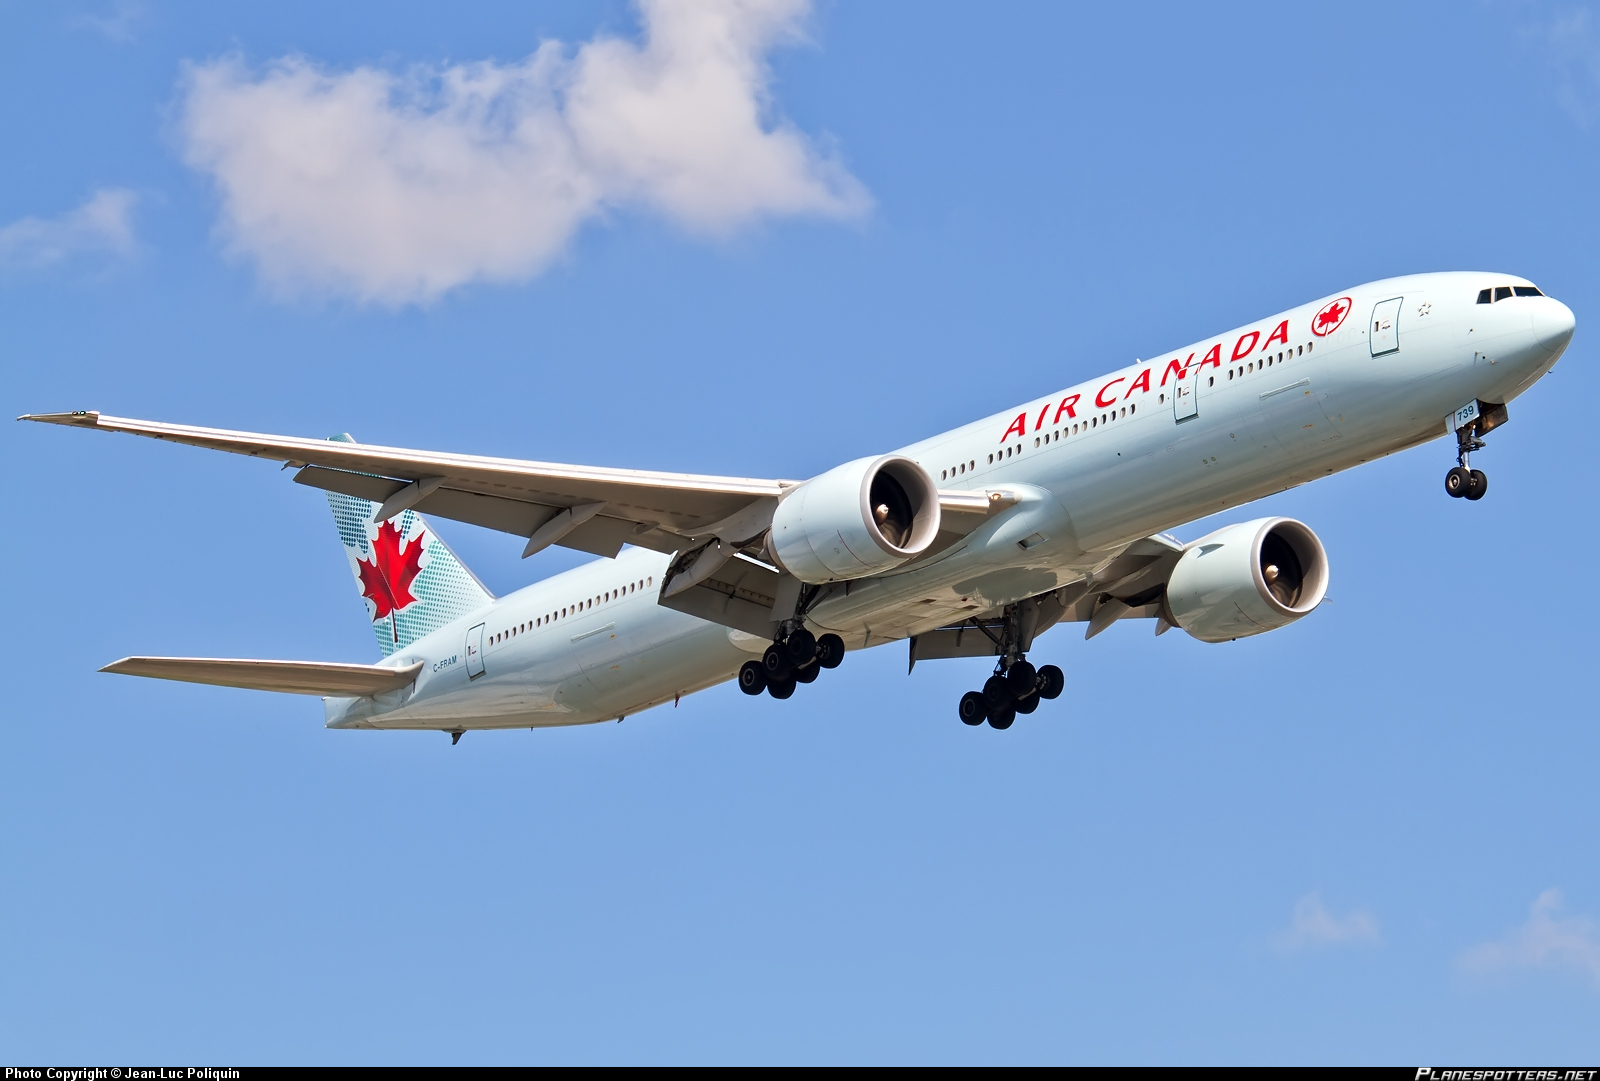 加拿大航空143号班机图片